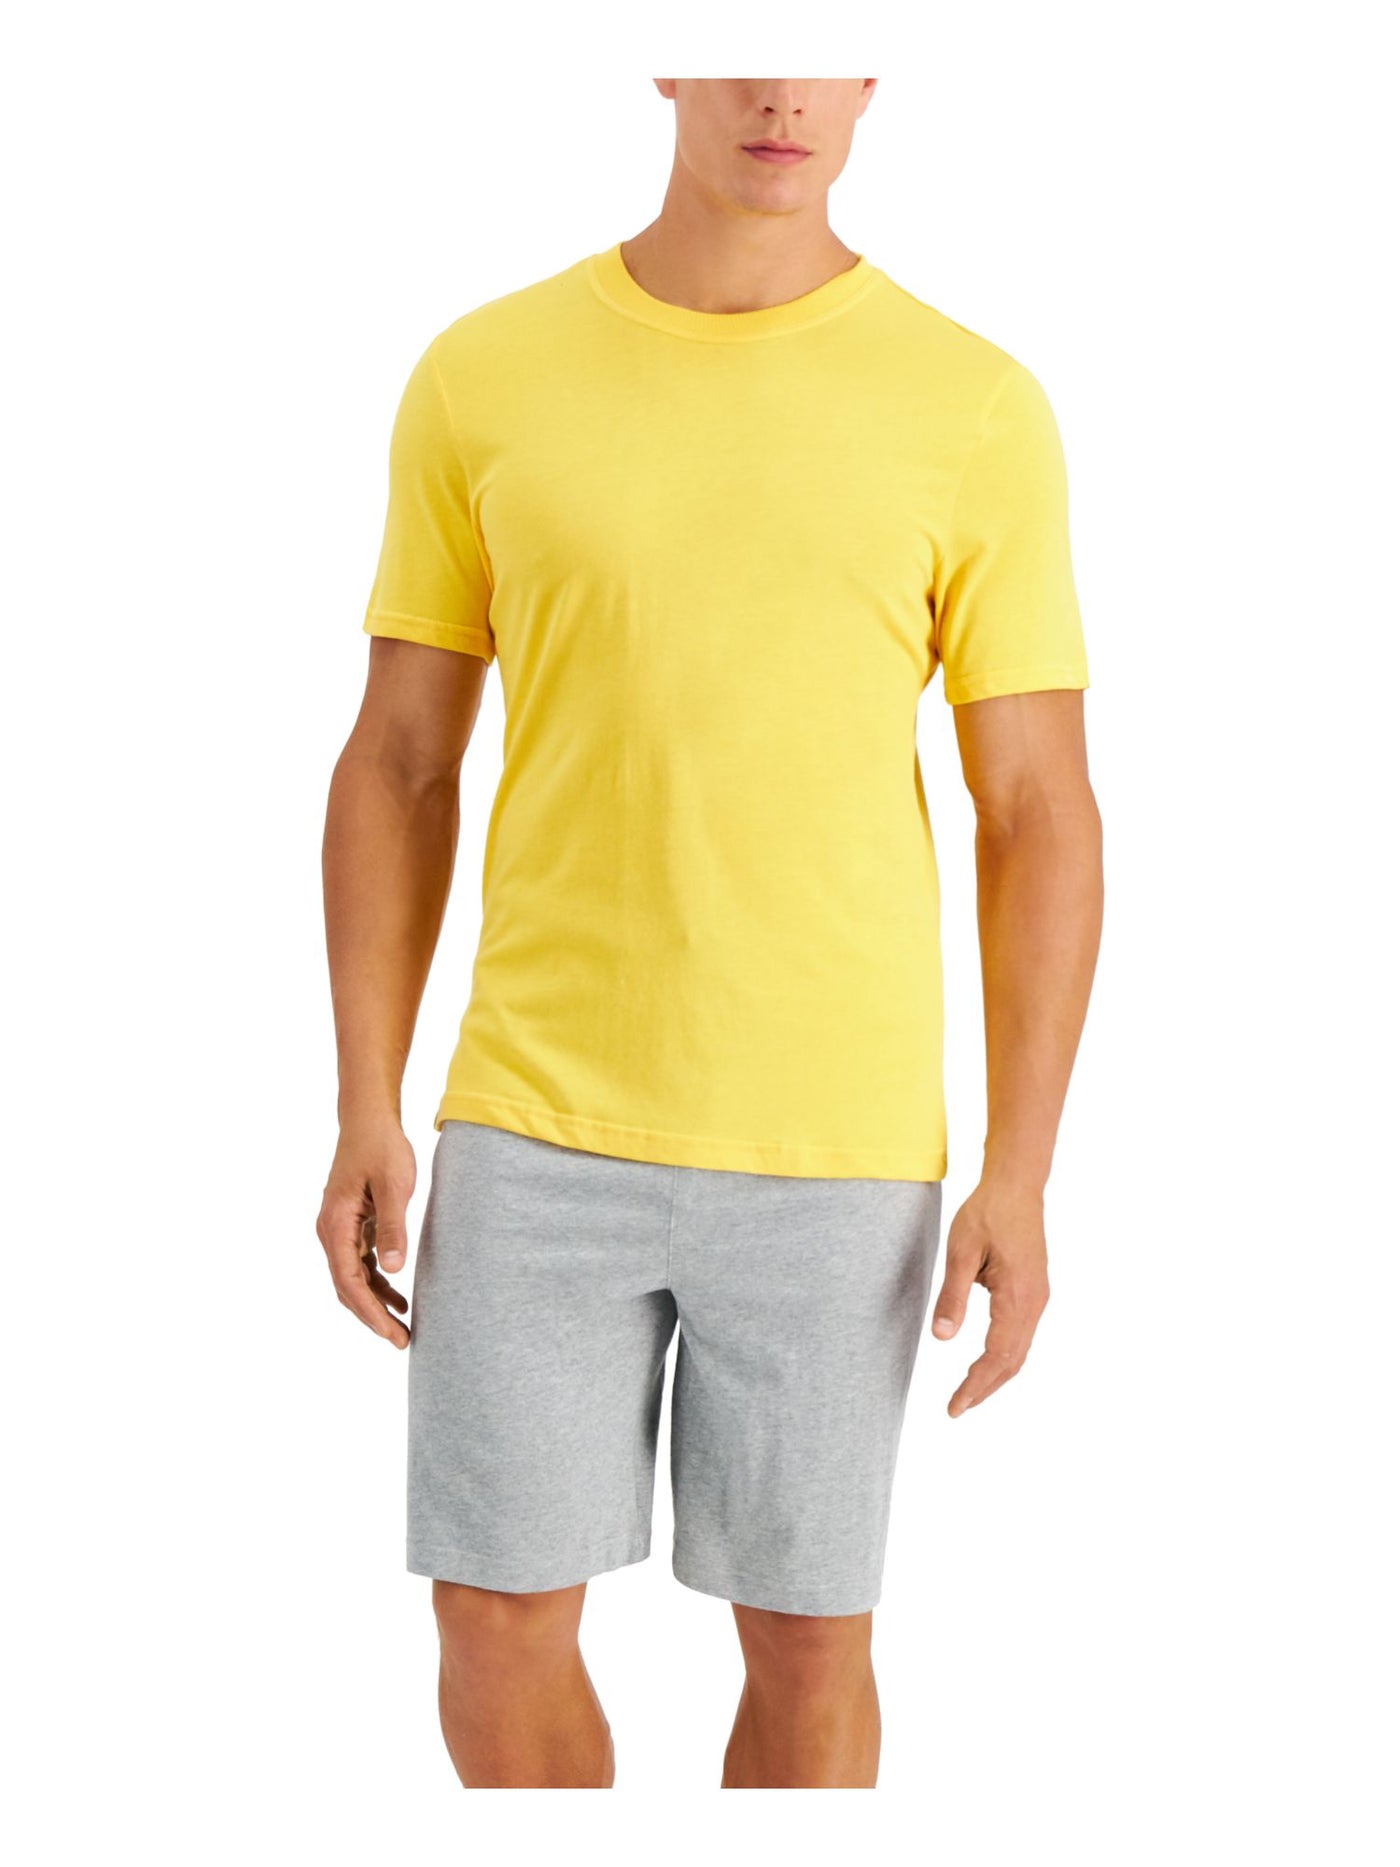 CLUBROOM Mens Yellow Drawstring Short Sleeve T-Shirt Top Shorts Pants Pajamas M